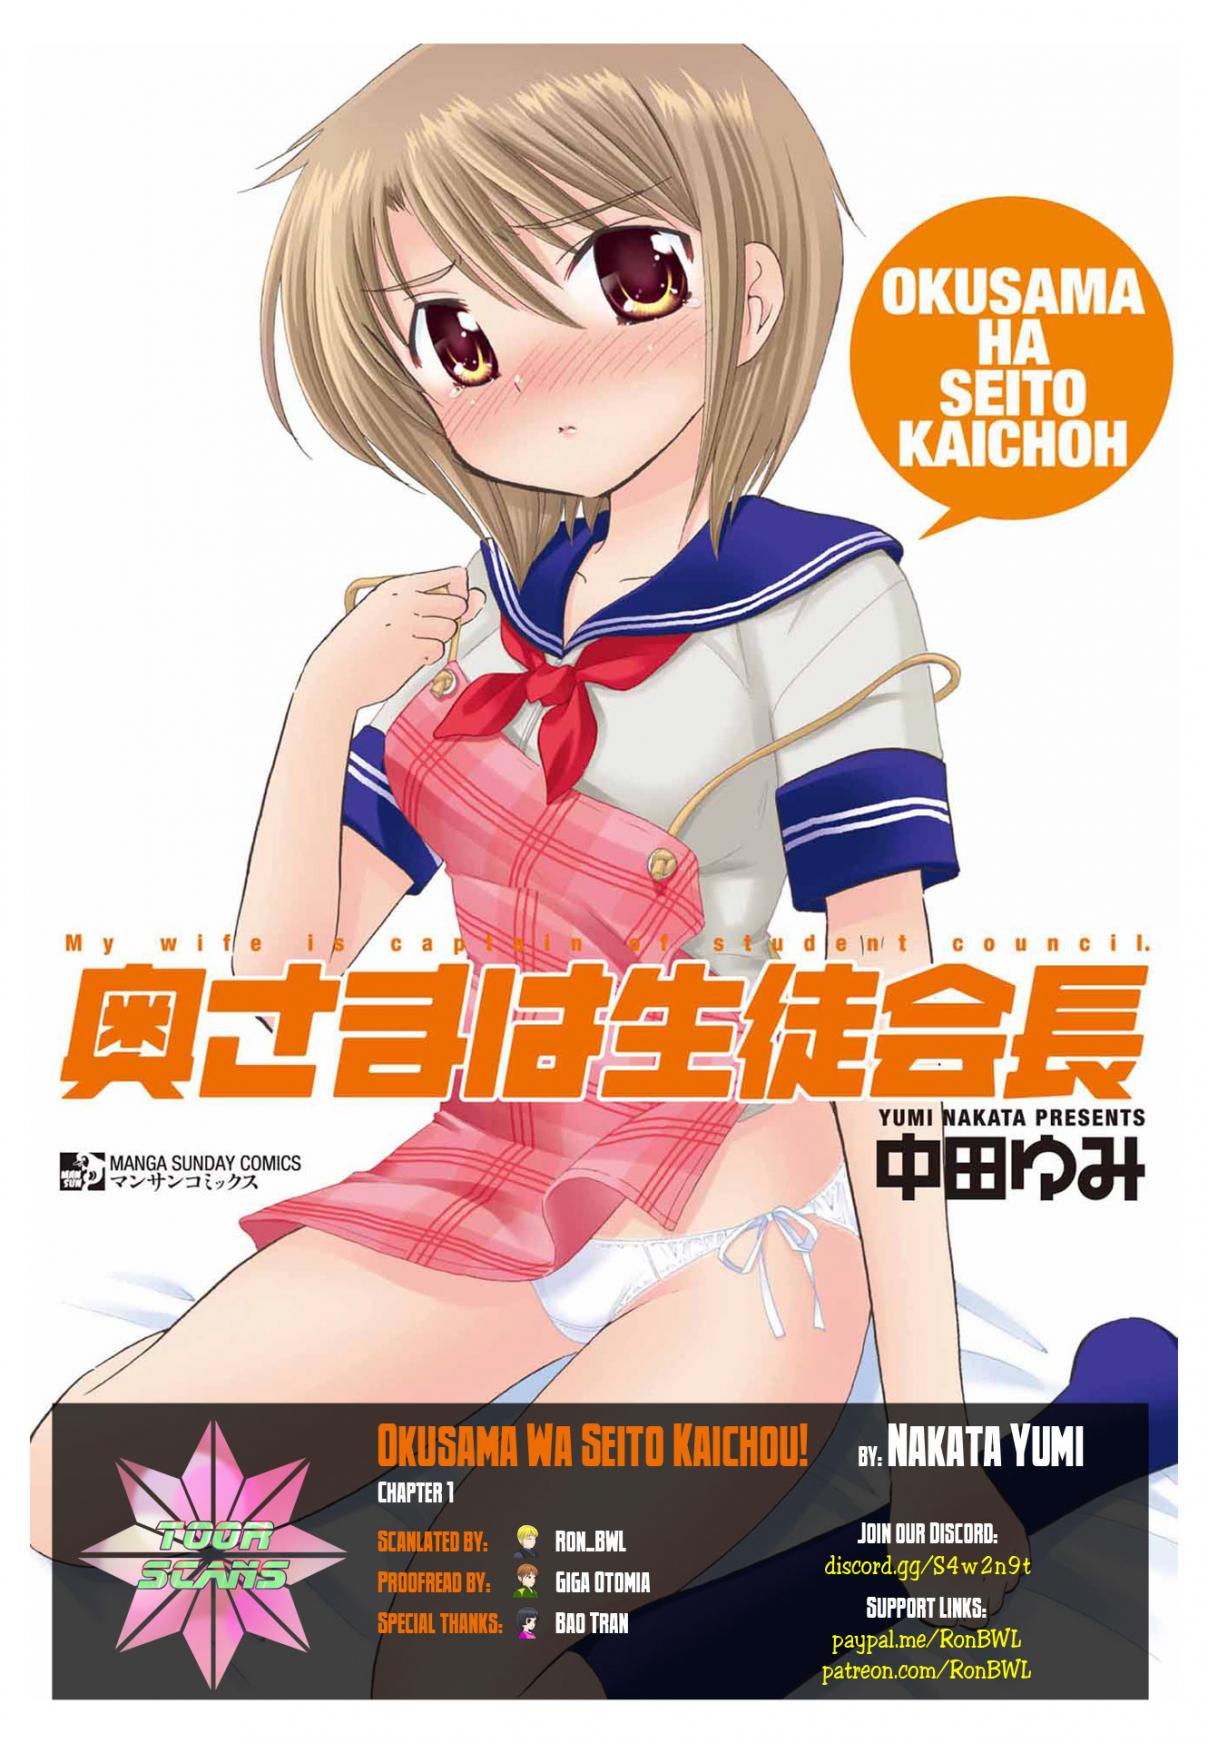 Okusama wa Seito Kaichou! Vol. 1 Ch. 1 Okusama's Marriage